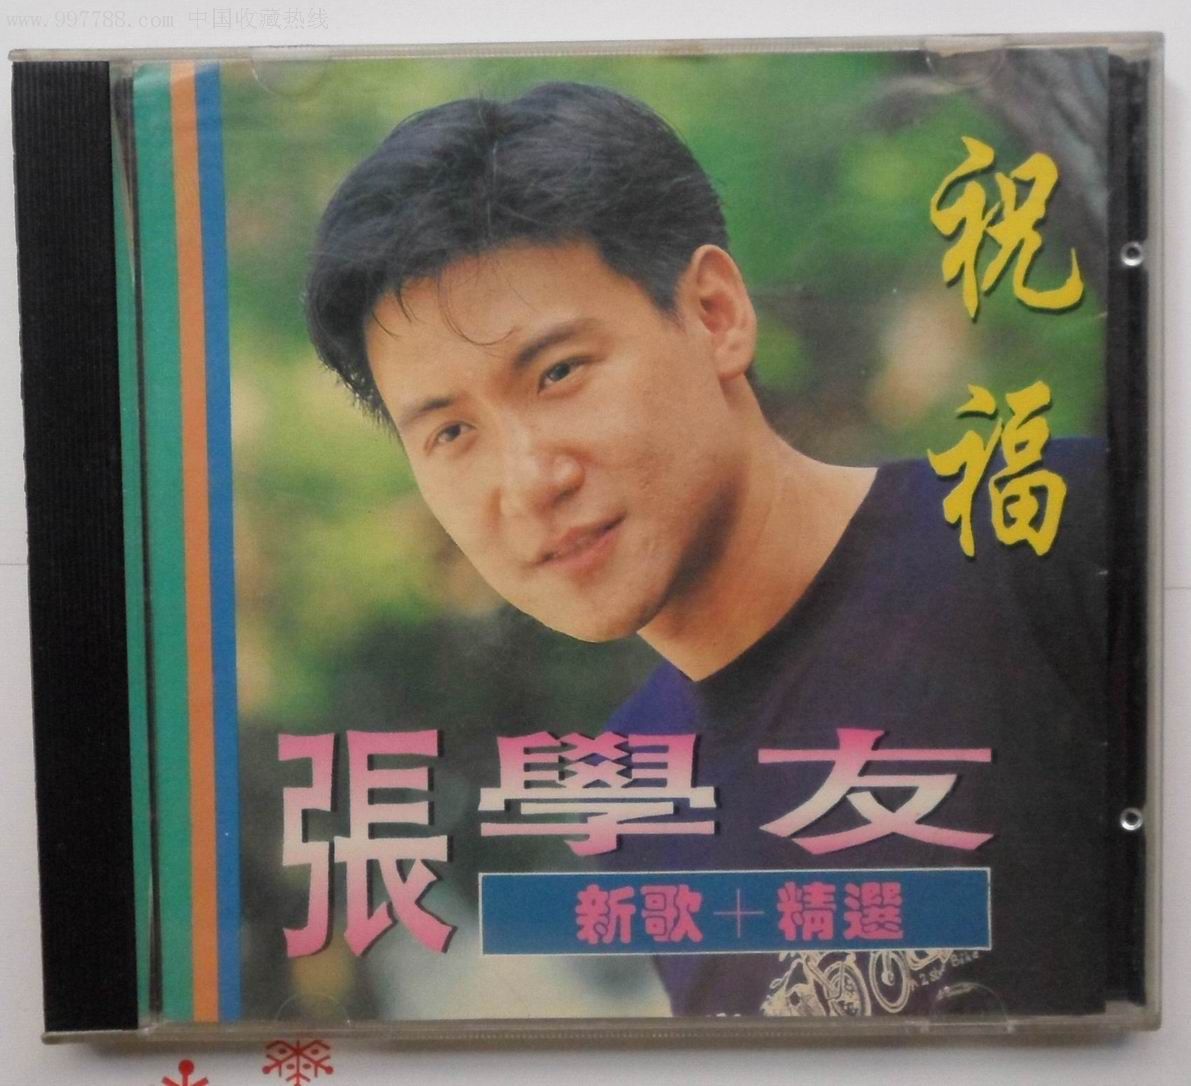 歌神张学友传唱度最高的十首国语歌曲